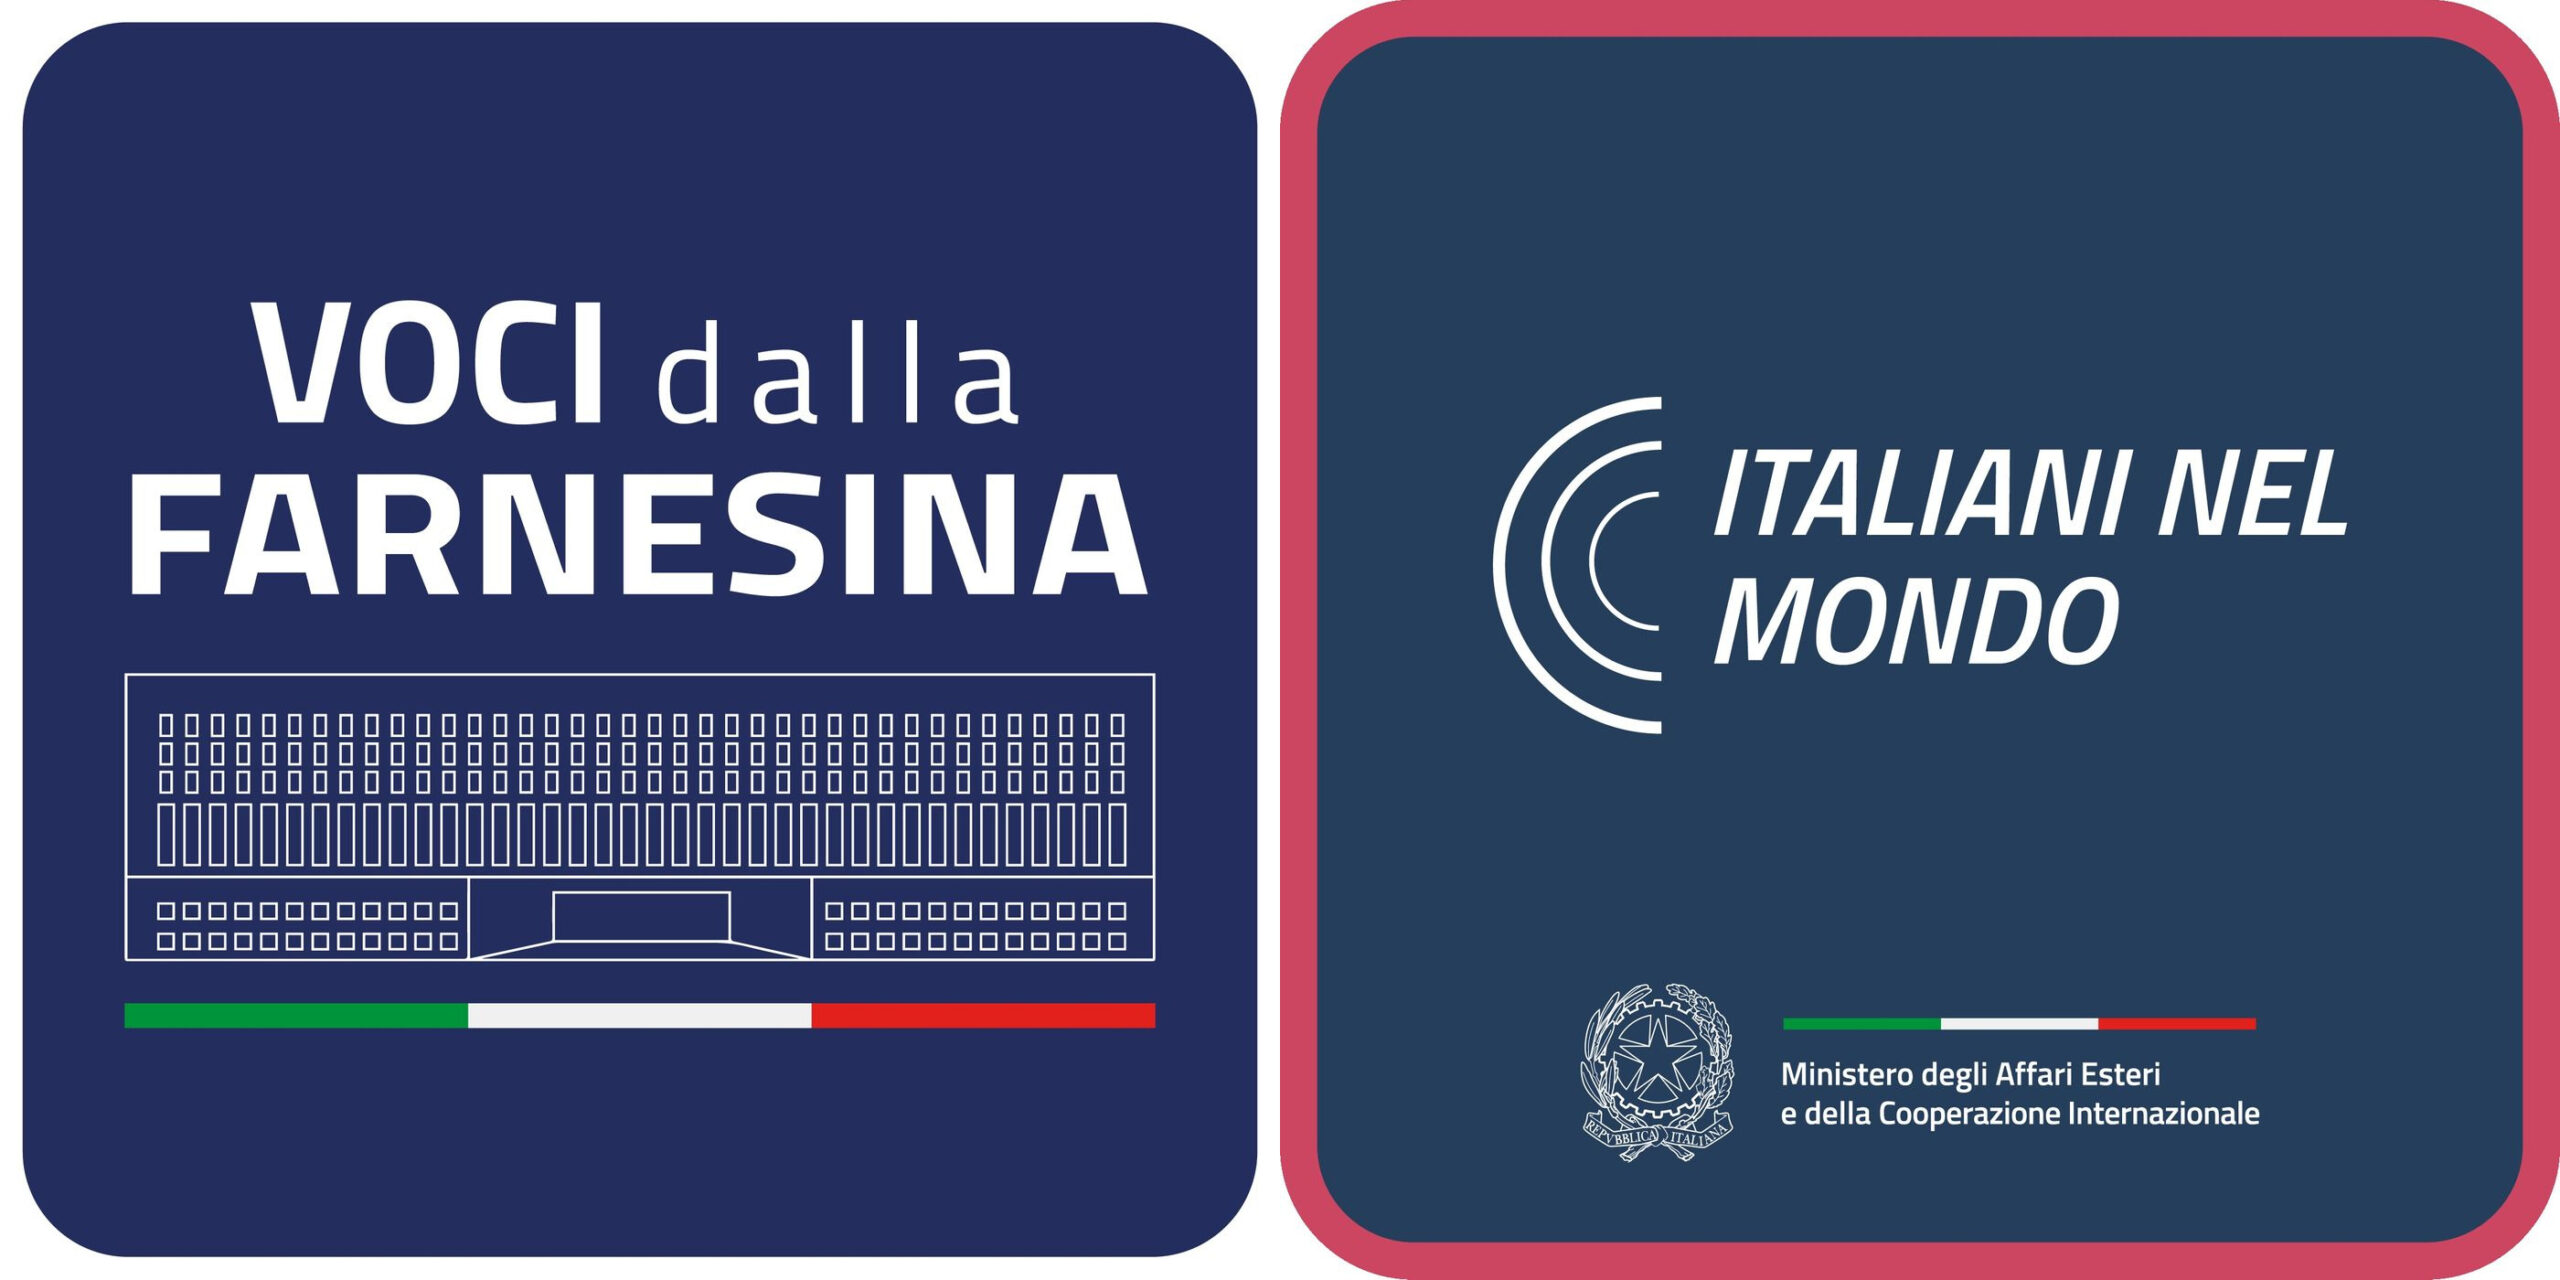 Crasi fra i logotipi di "Voci della Farnesina" e di "Italiani nel mondo"